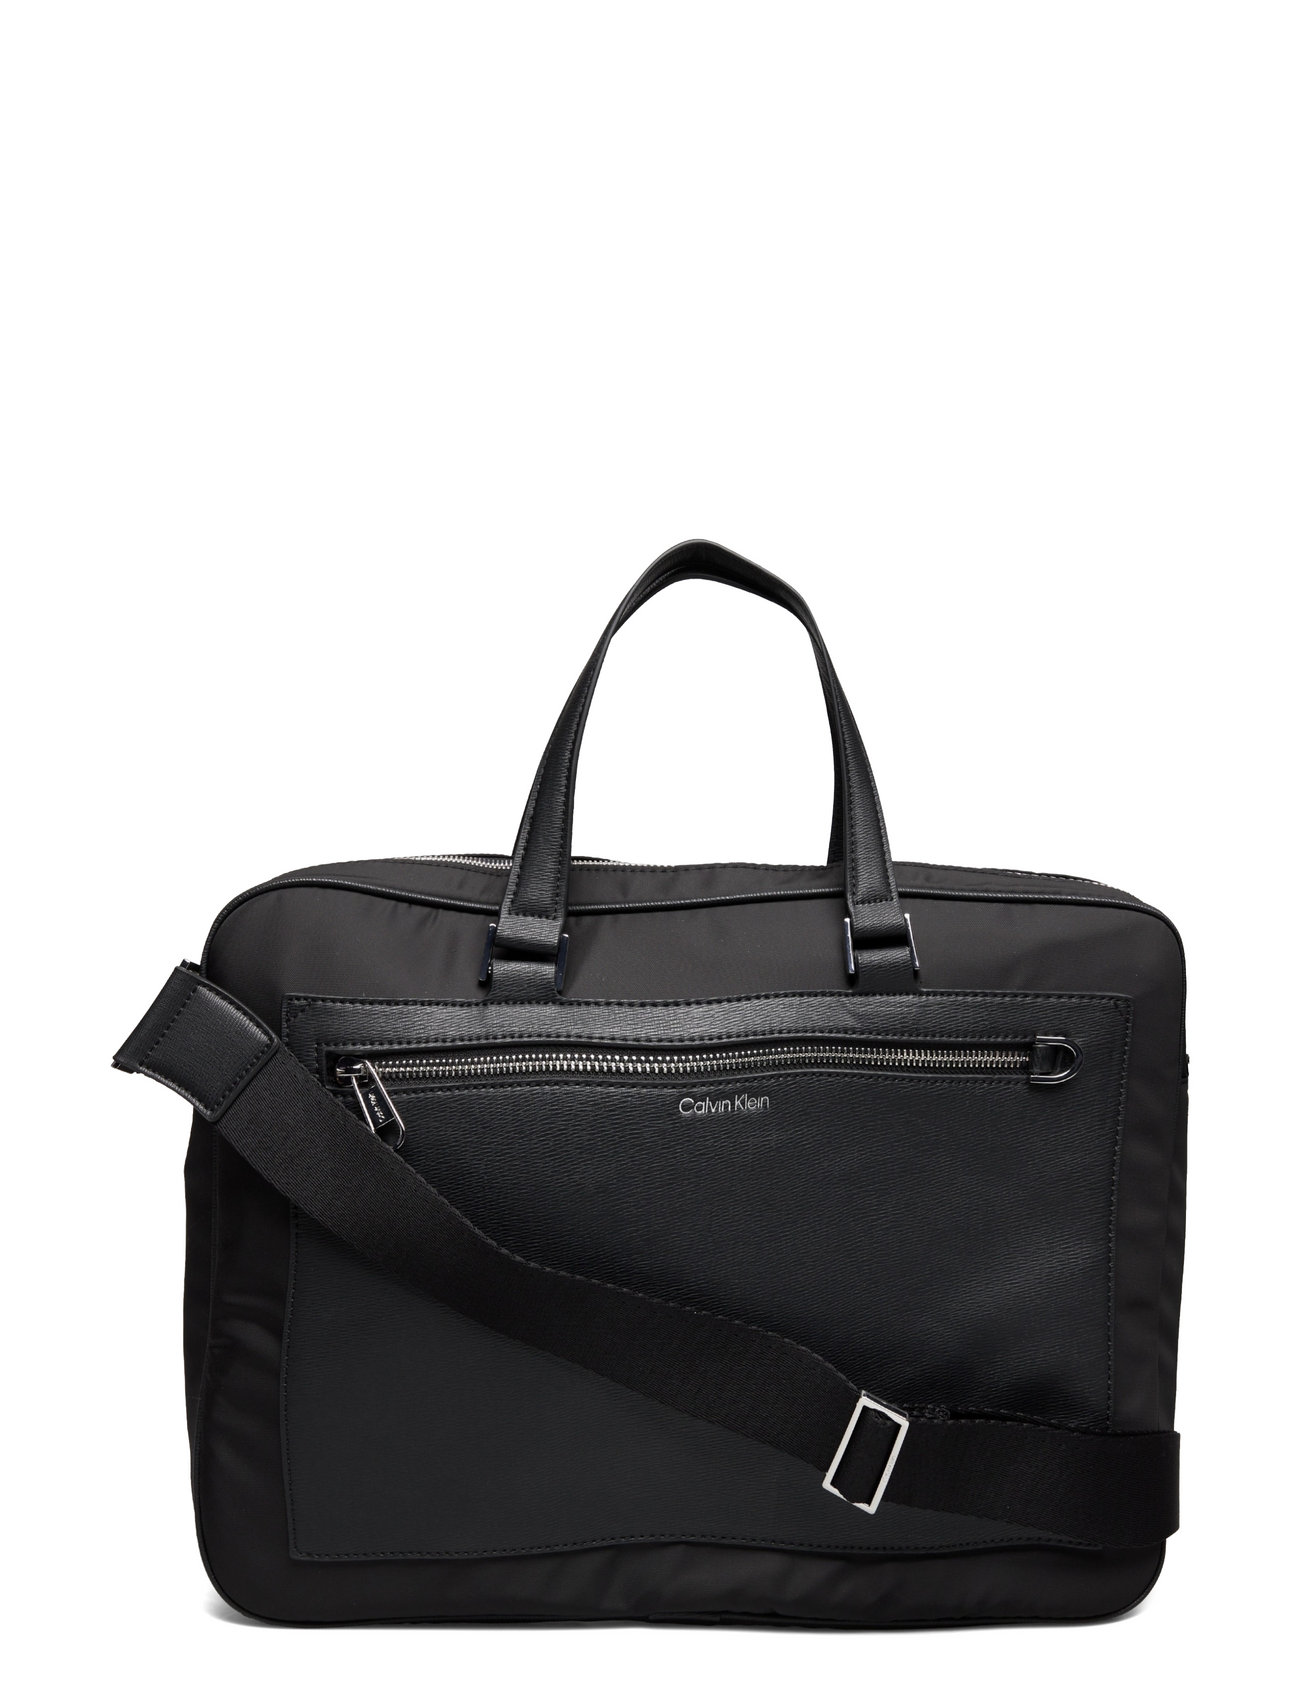 Calvin Klein Ck Elevated Laptop Bag Wpckt (Ck Black), 1189.30 kr